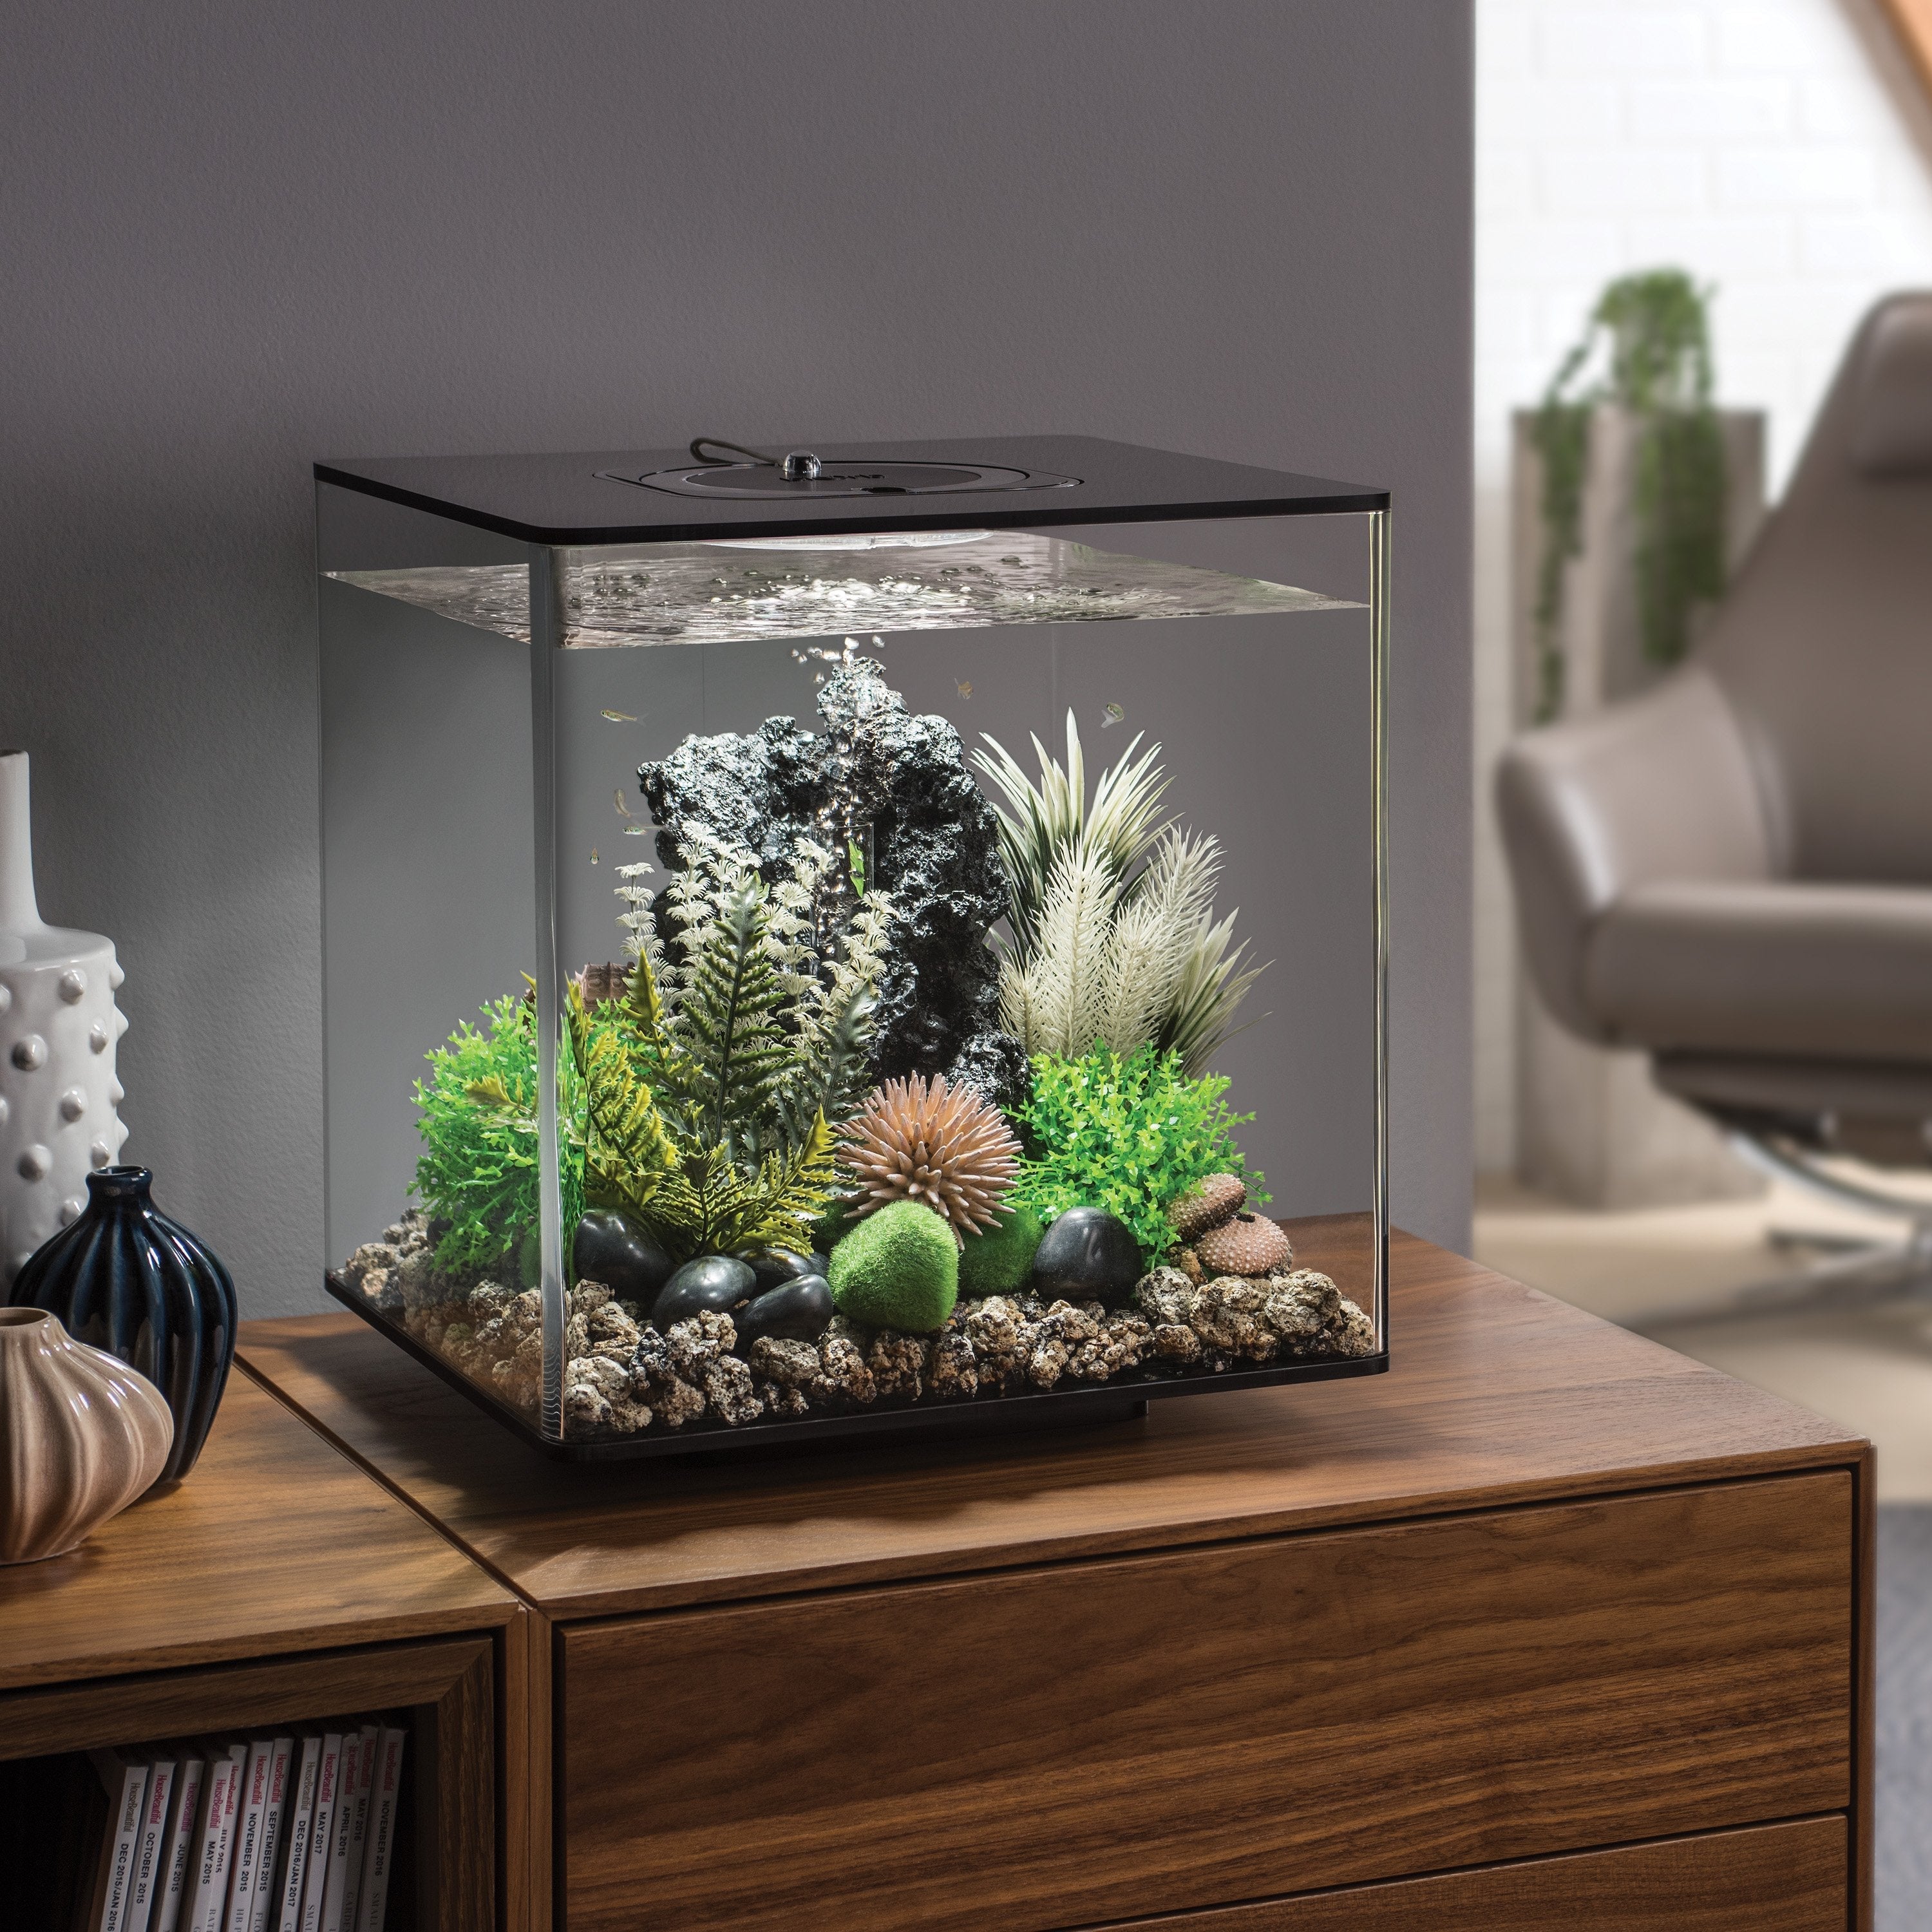 Get inspiration for your aquarium design by using the biOrb CUBE 30 Aquarium